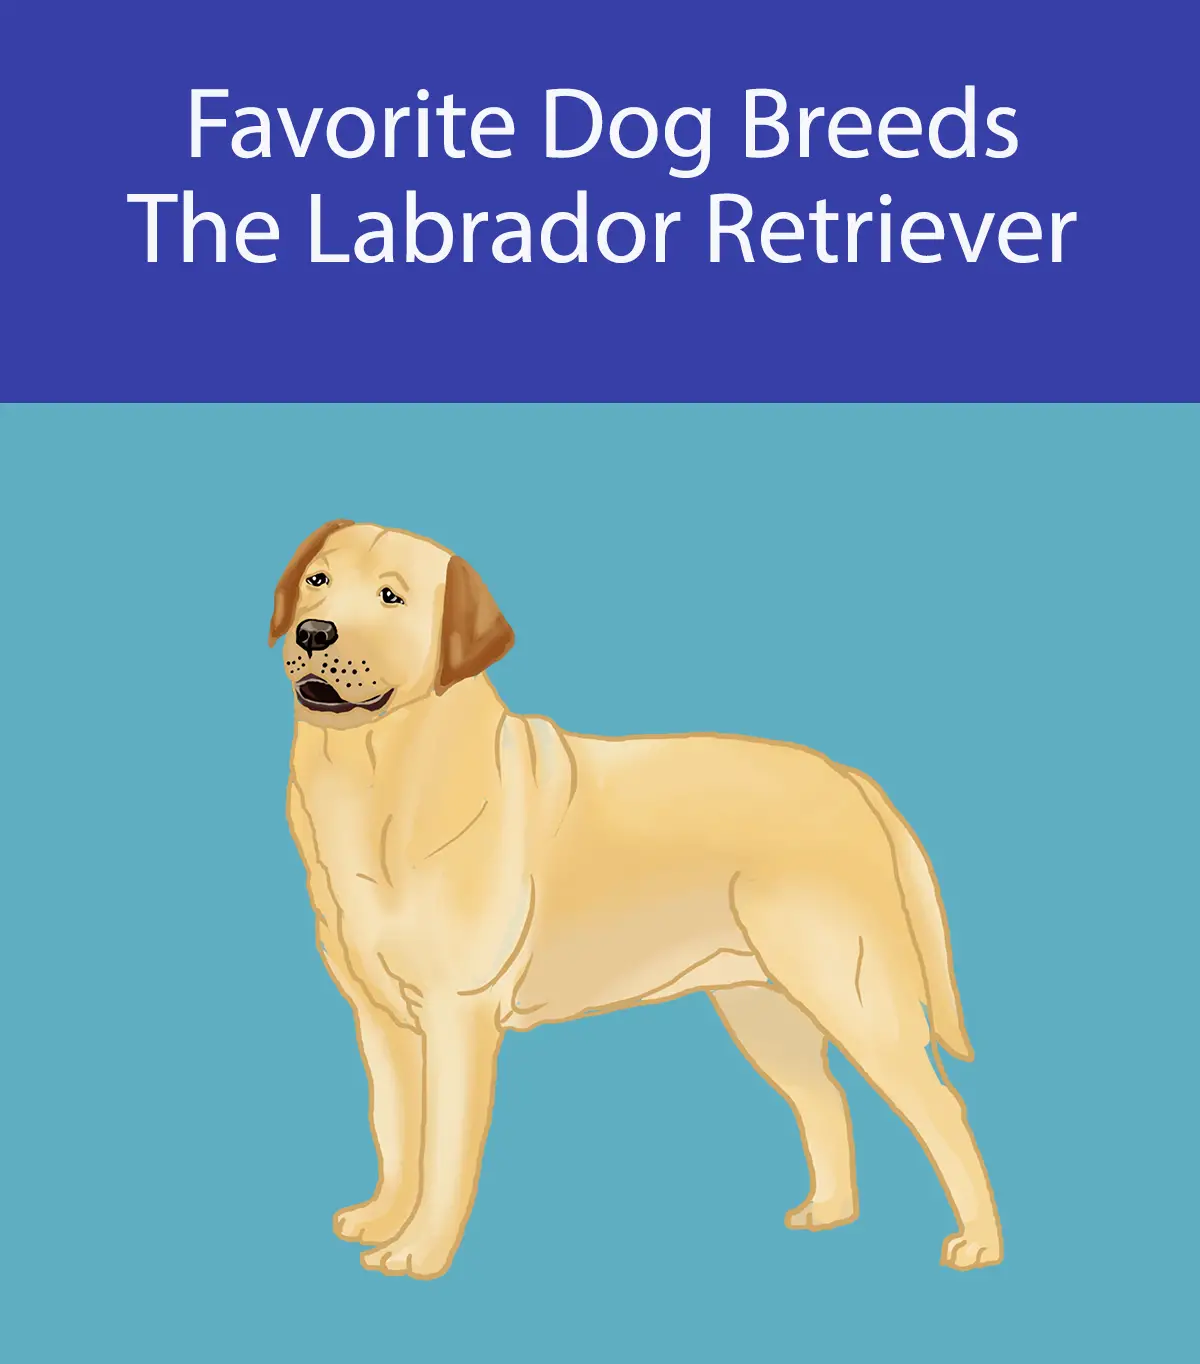 Favorite Dog Breeds - The Labrador Retriever